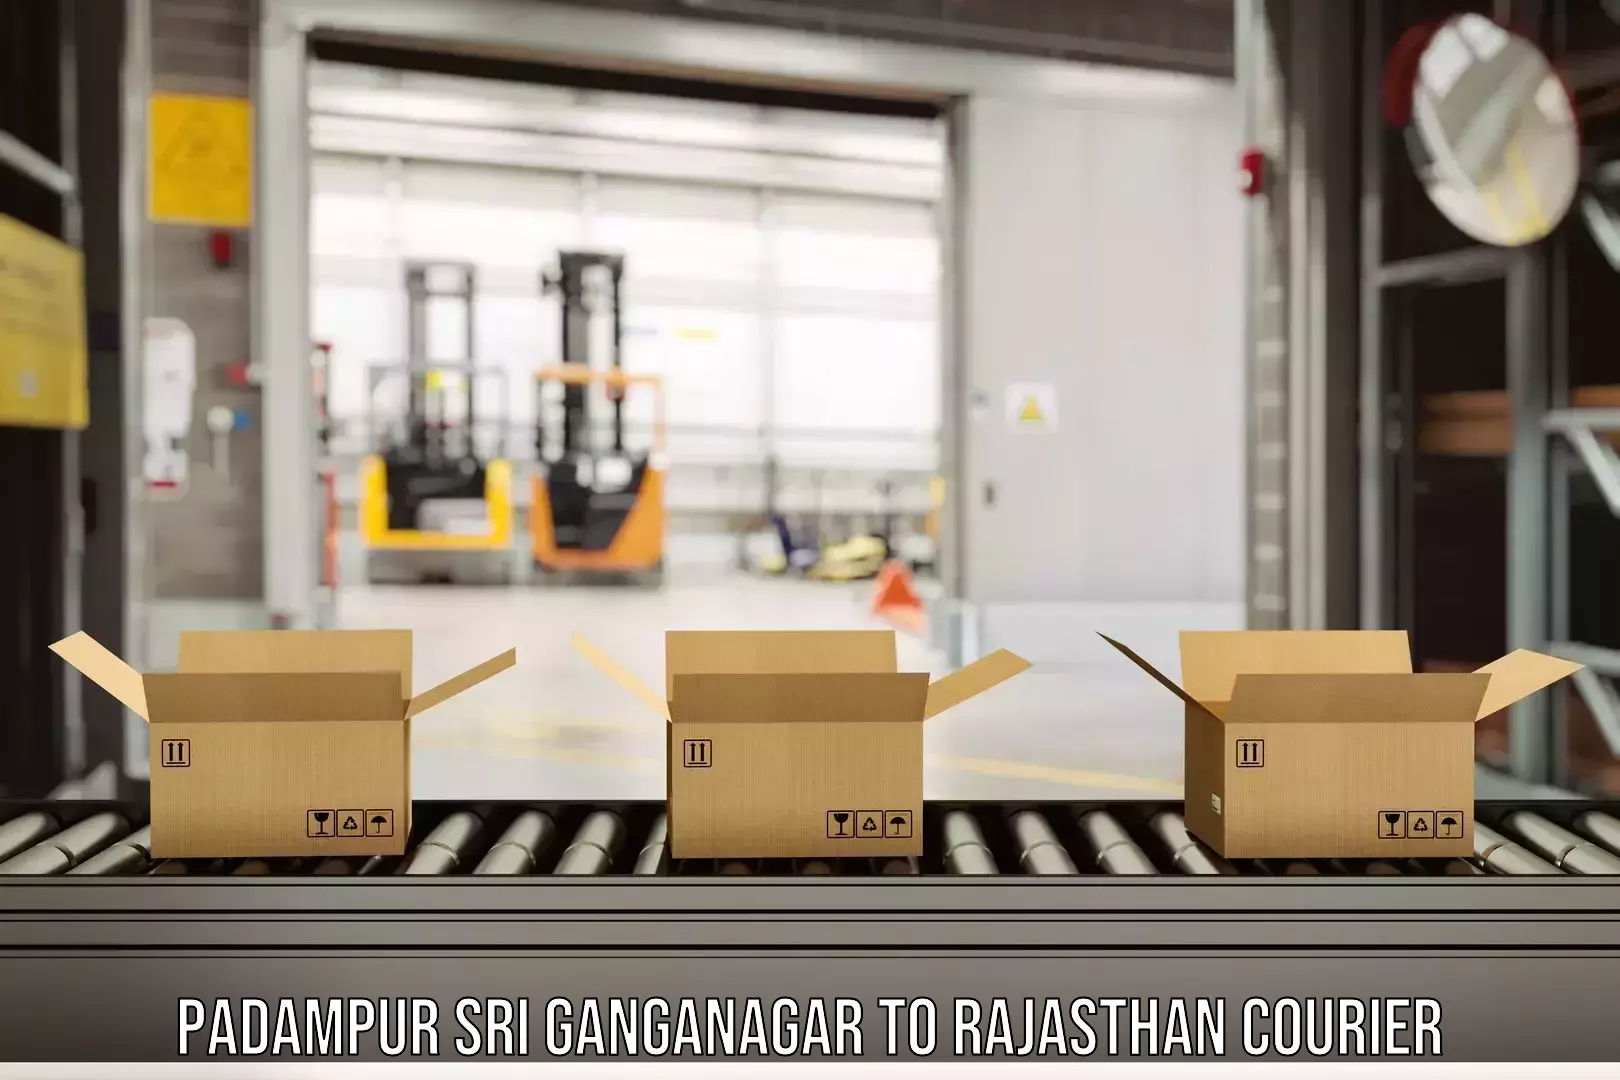 Multi-city courier Padampur Sri Ganganagar to Khairthal